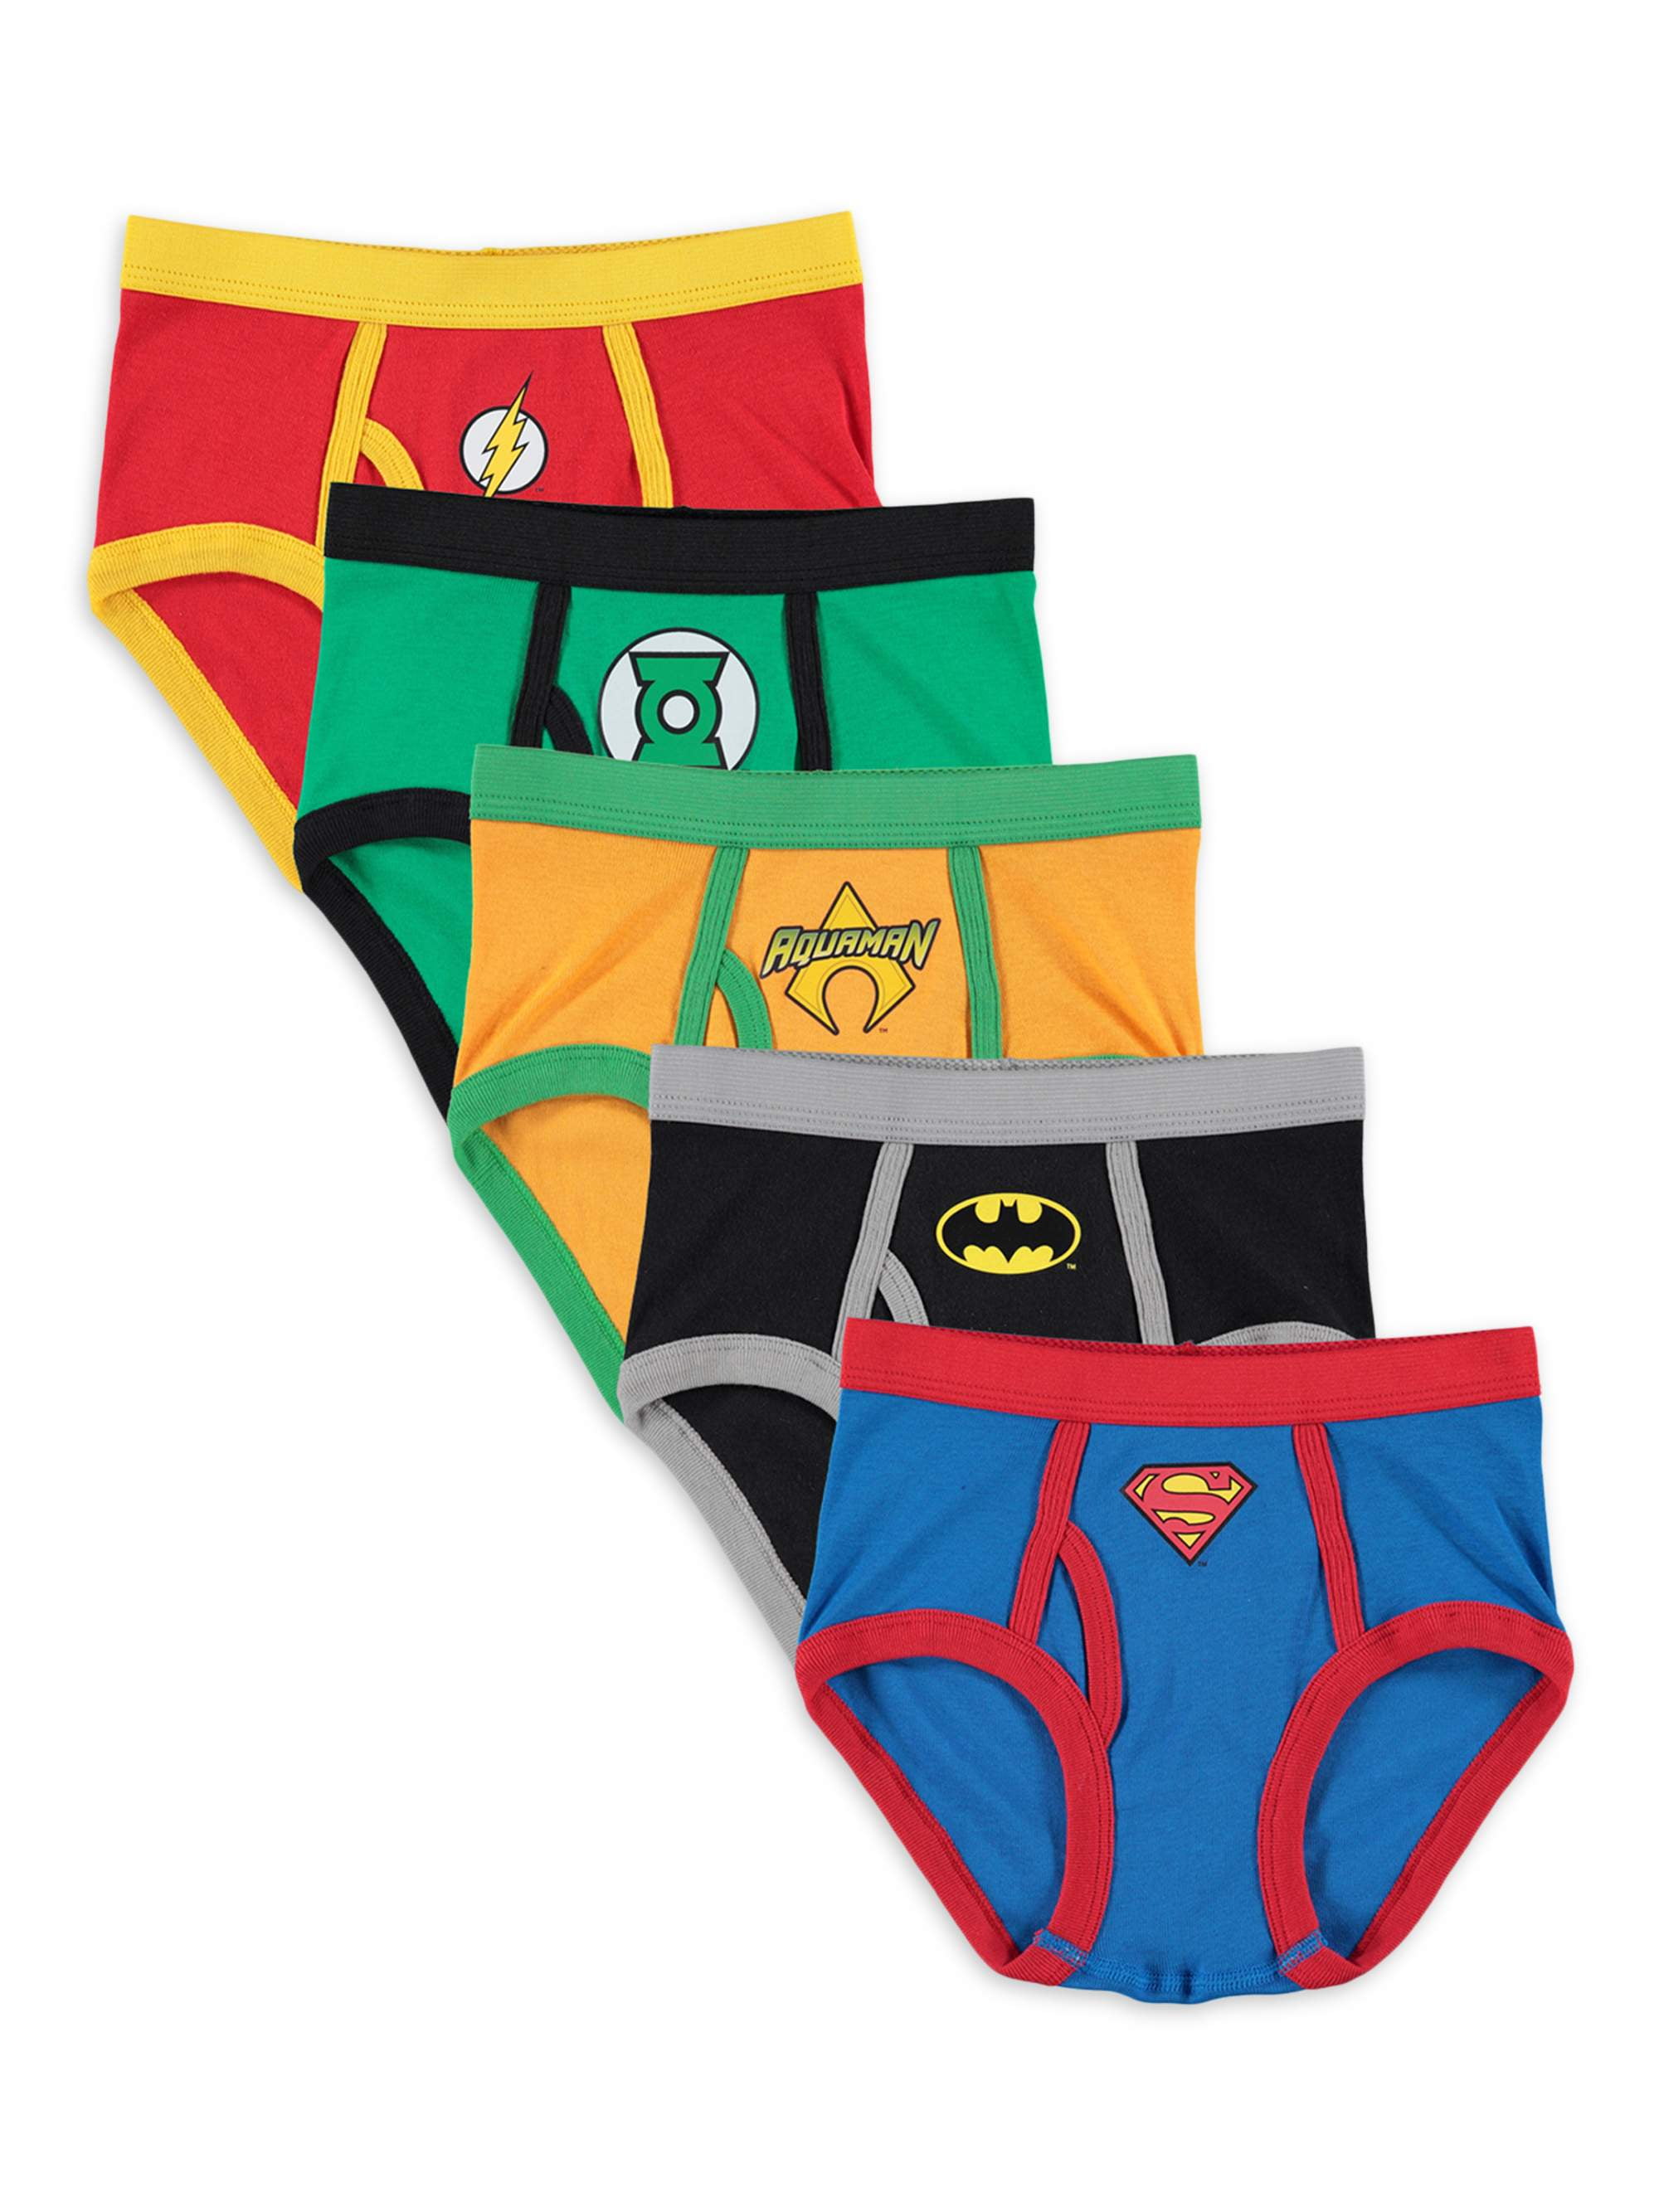 Justice League Boys Briefs Underwear, 5 Pack, Sizes 4-8 Briefs